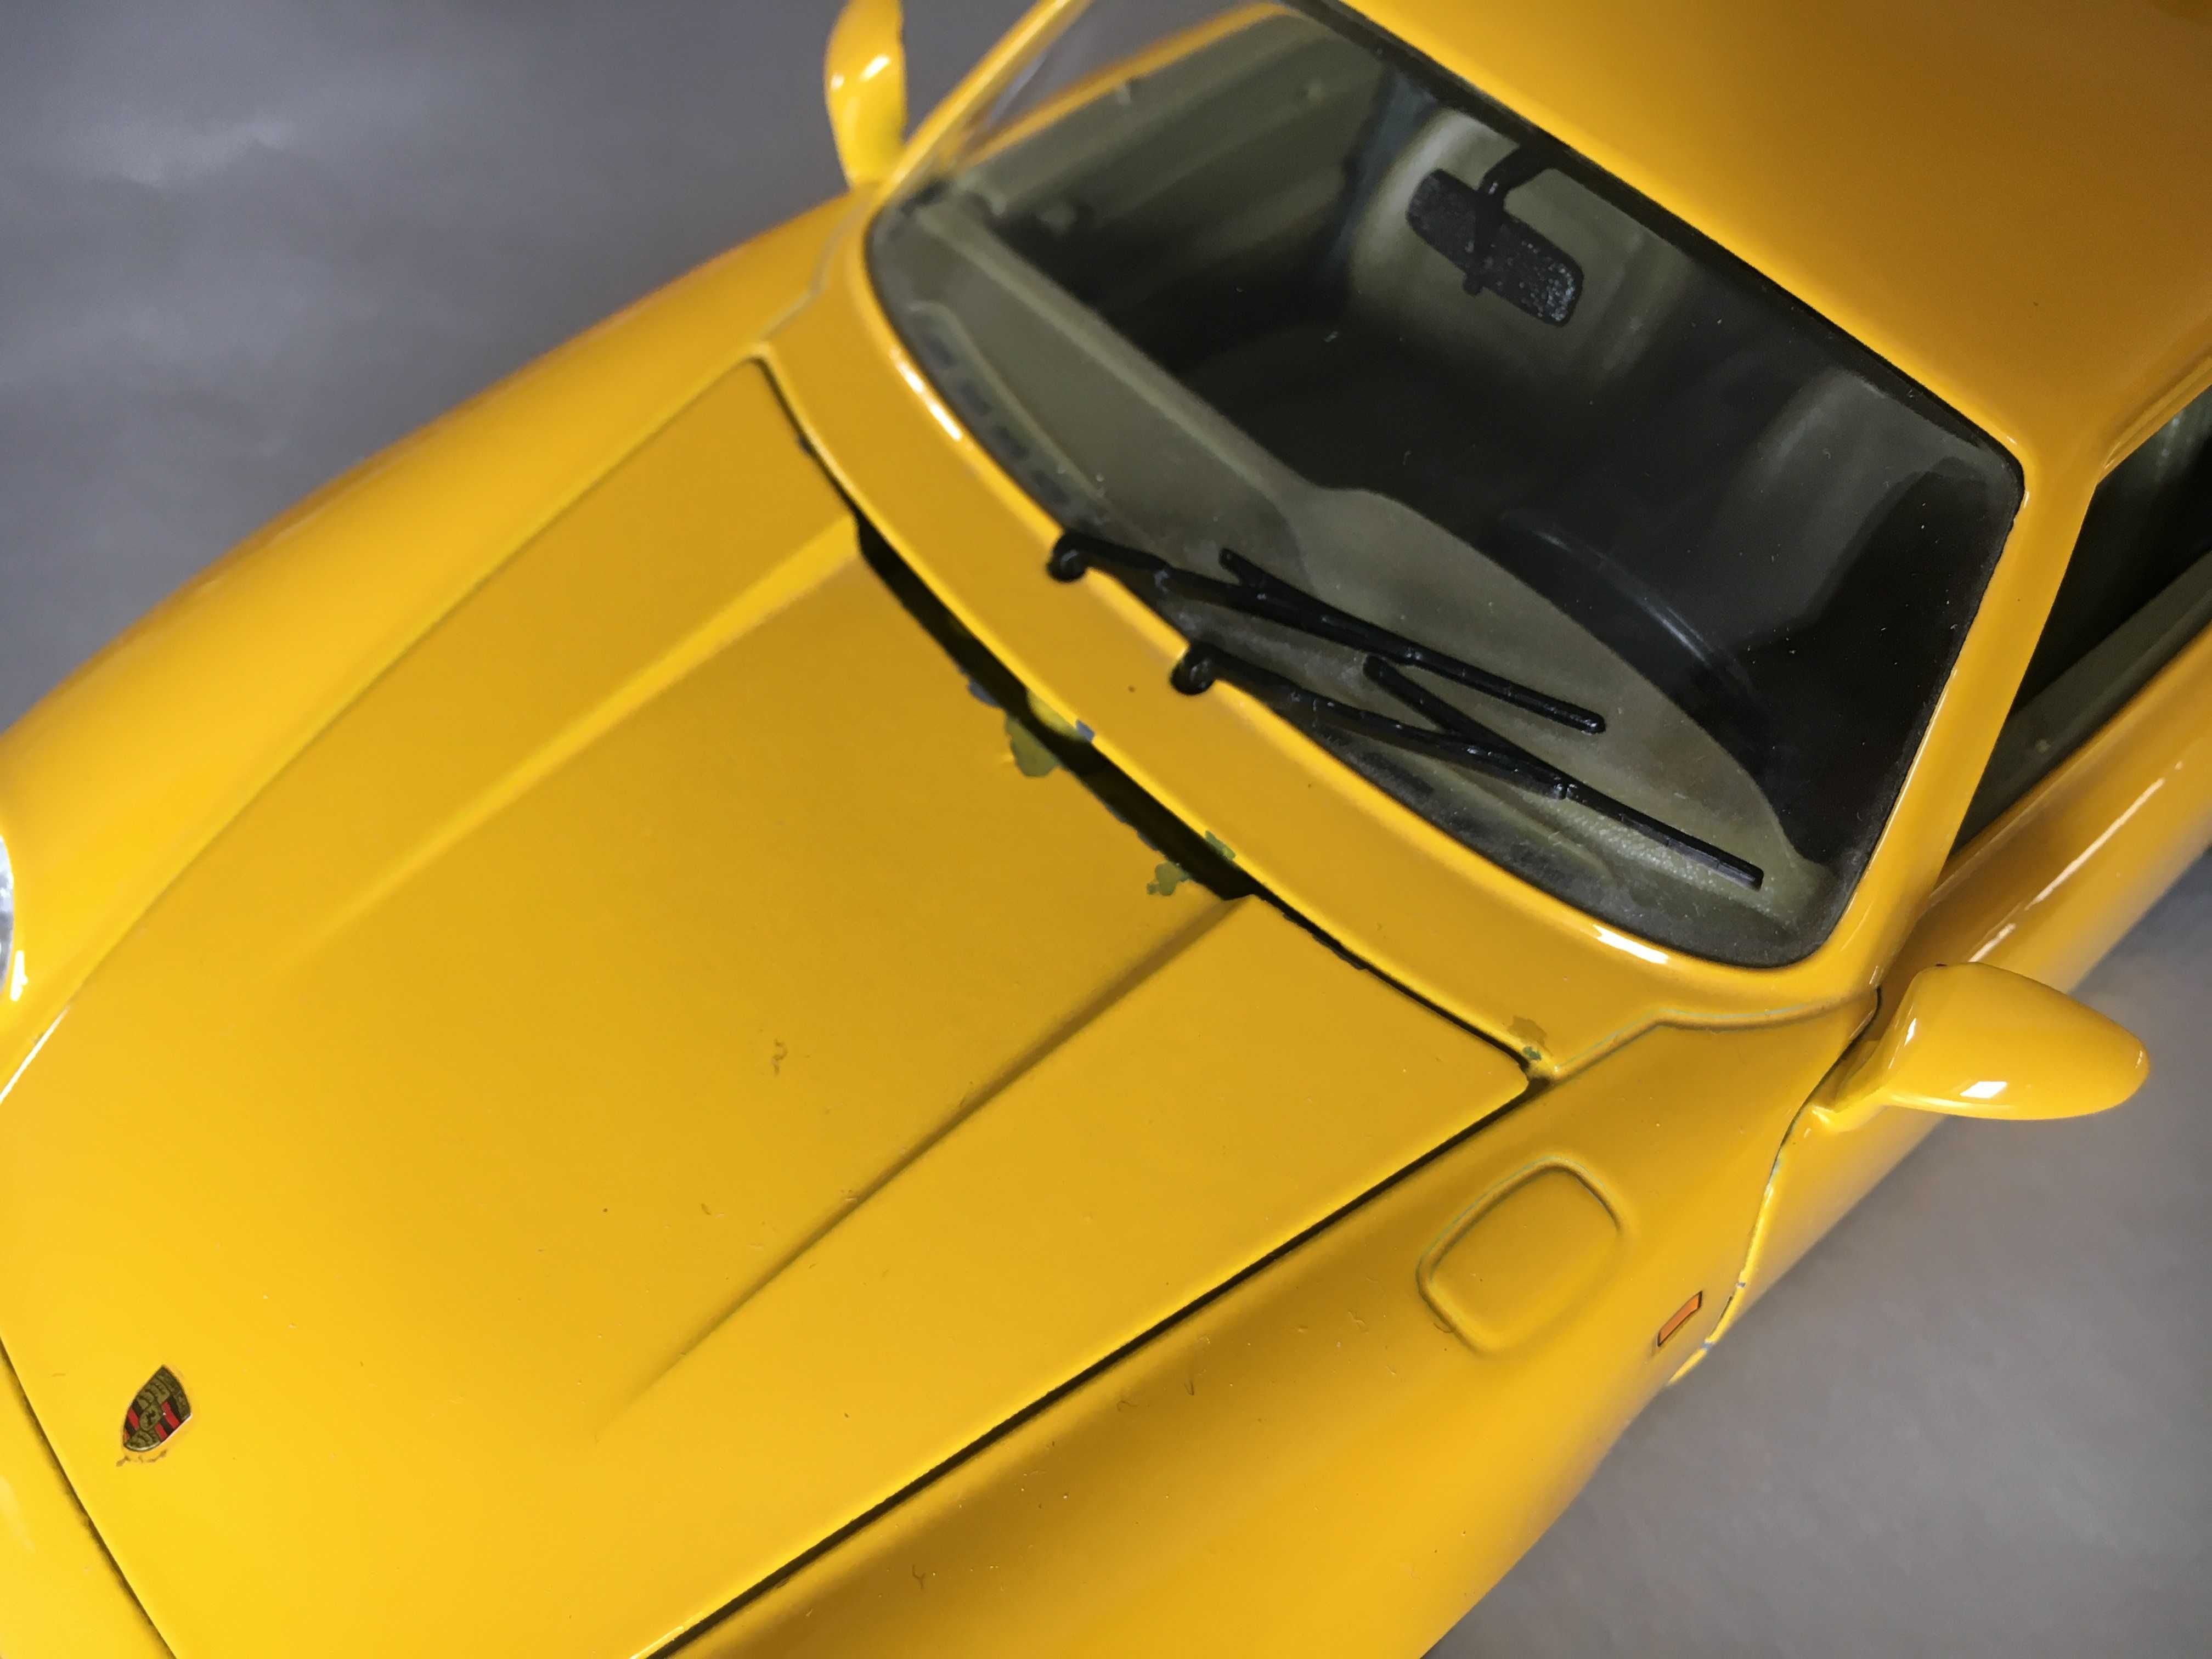 Conjunto de 3 miniaturas Burago escala 1:18 Dodge Ferrari Porsche